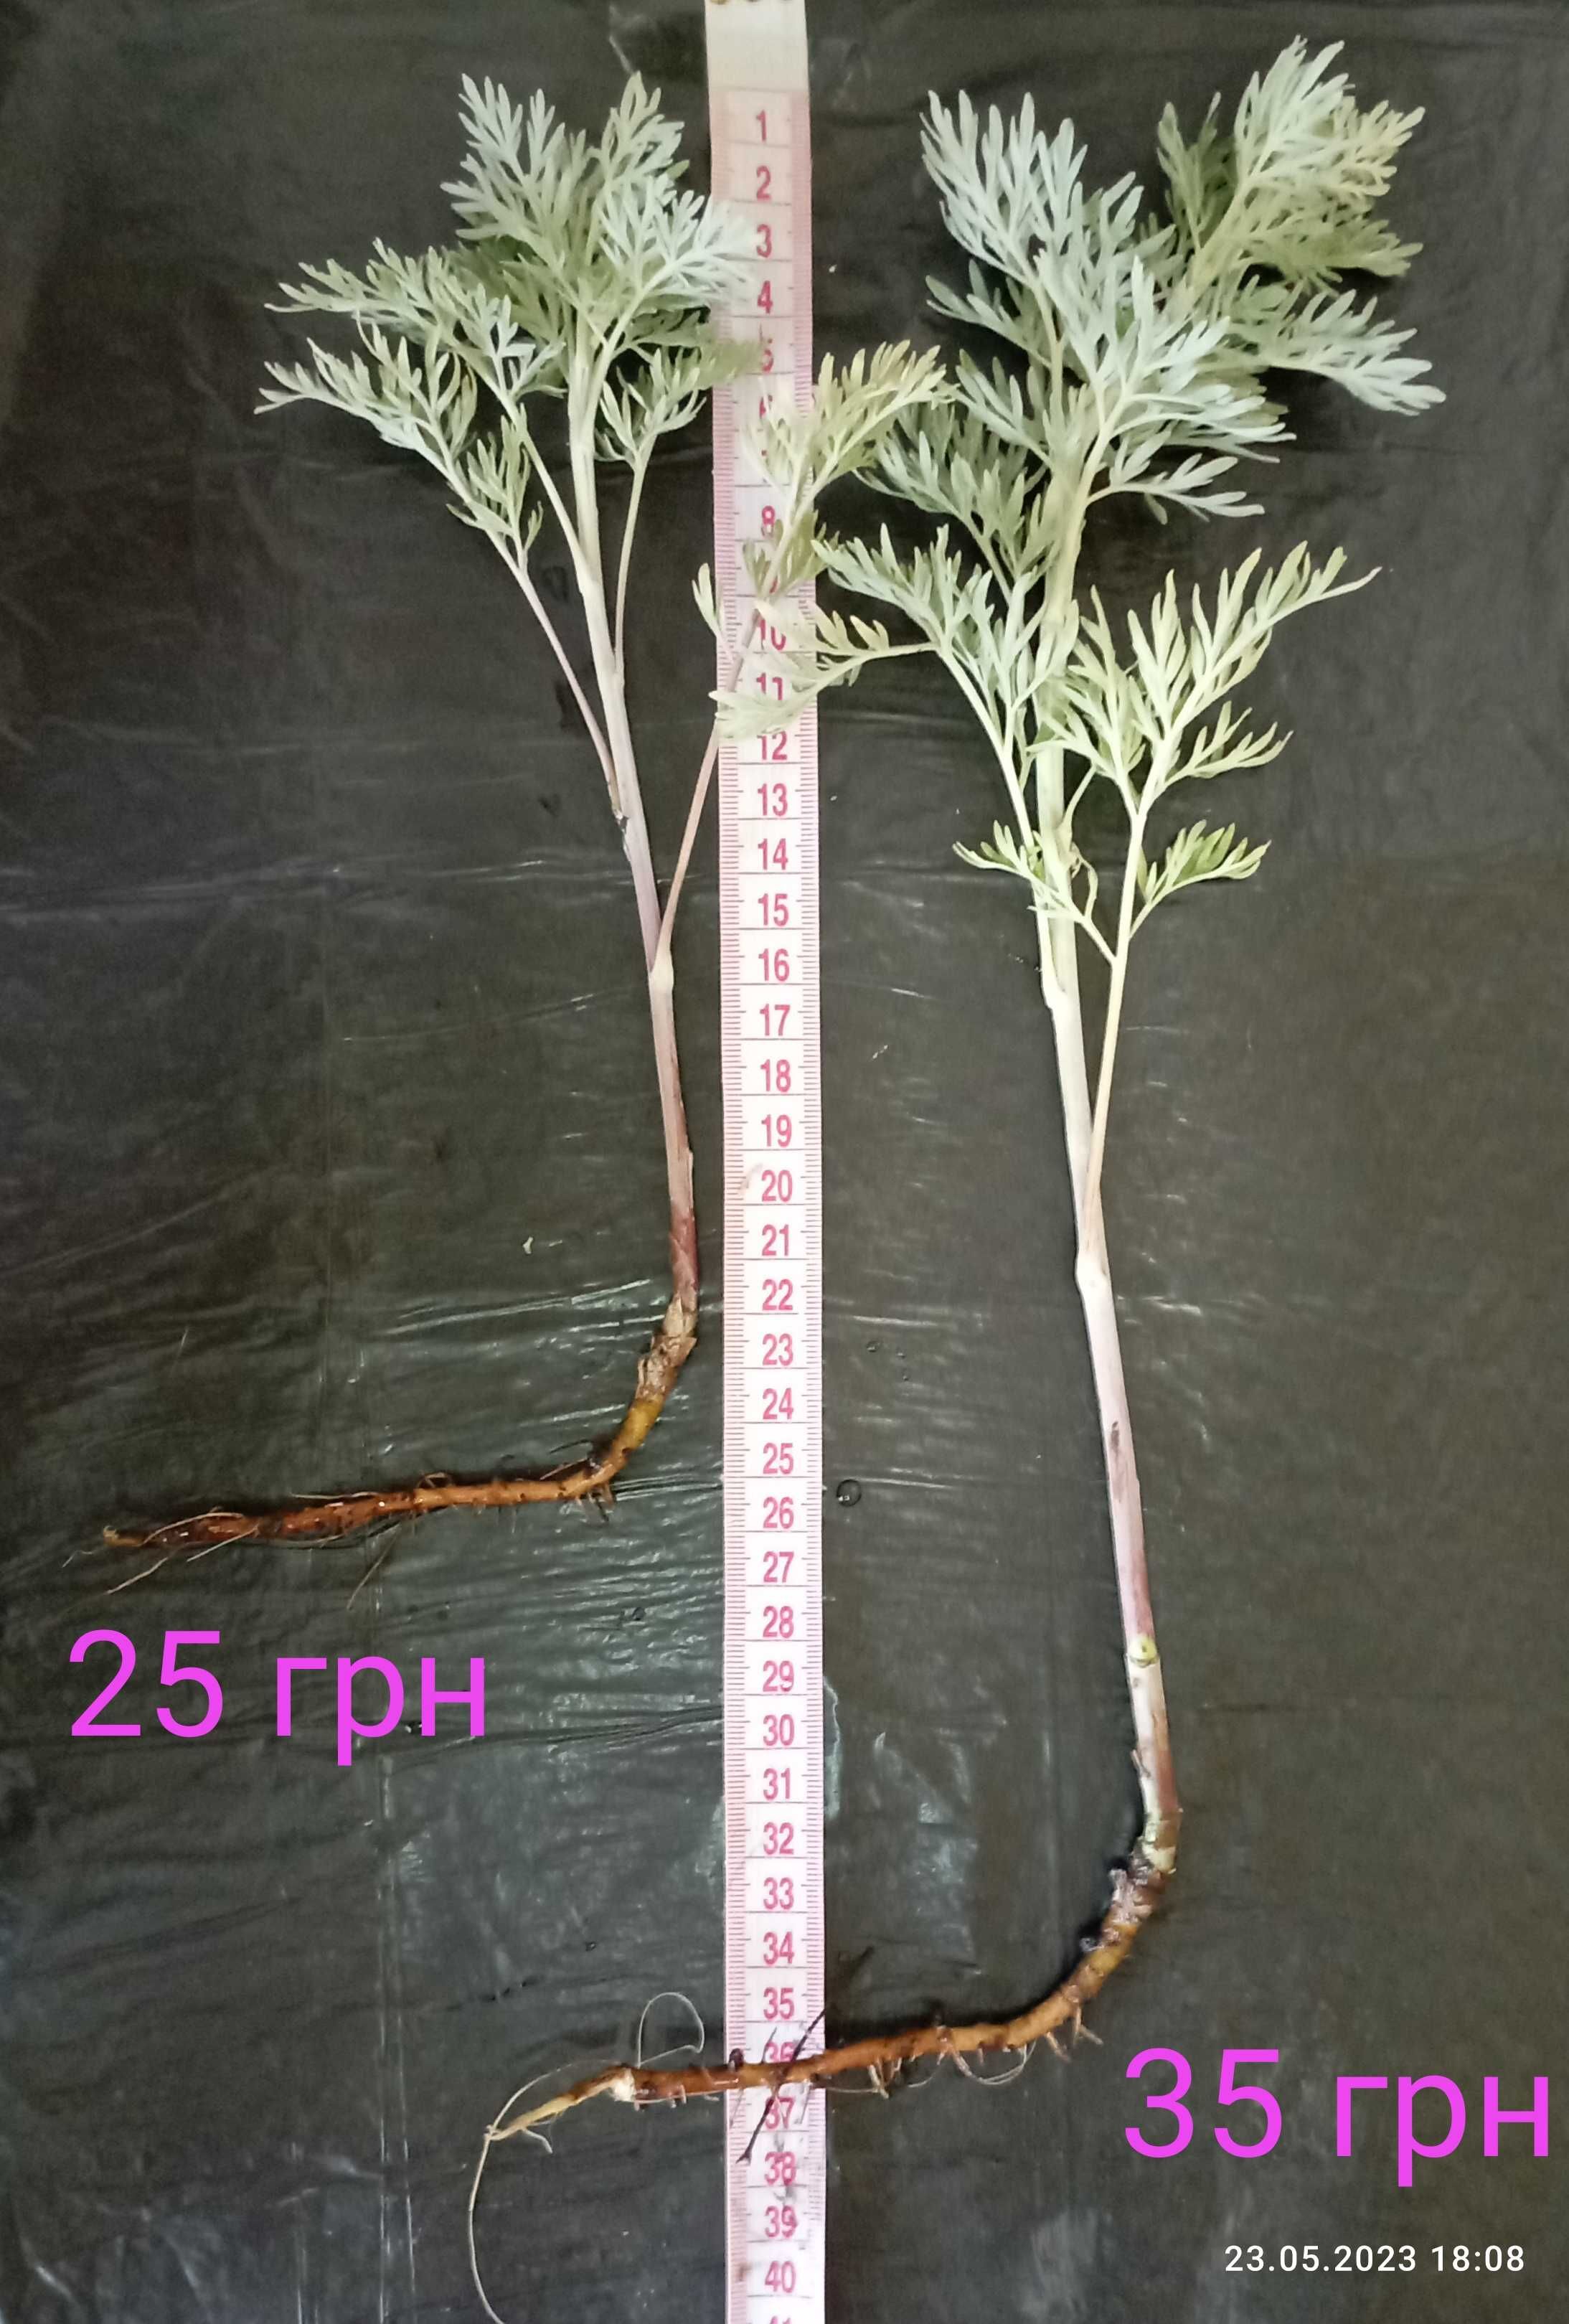 ПОЛИН ГІРКИЙ Artemisia absinthium ПОЛЫНЬ ГОРЬКАЯ саджанці/розсада ЗКС